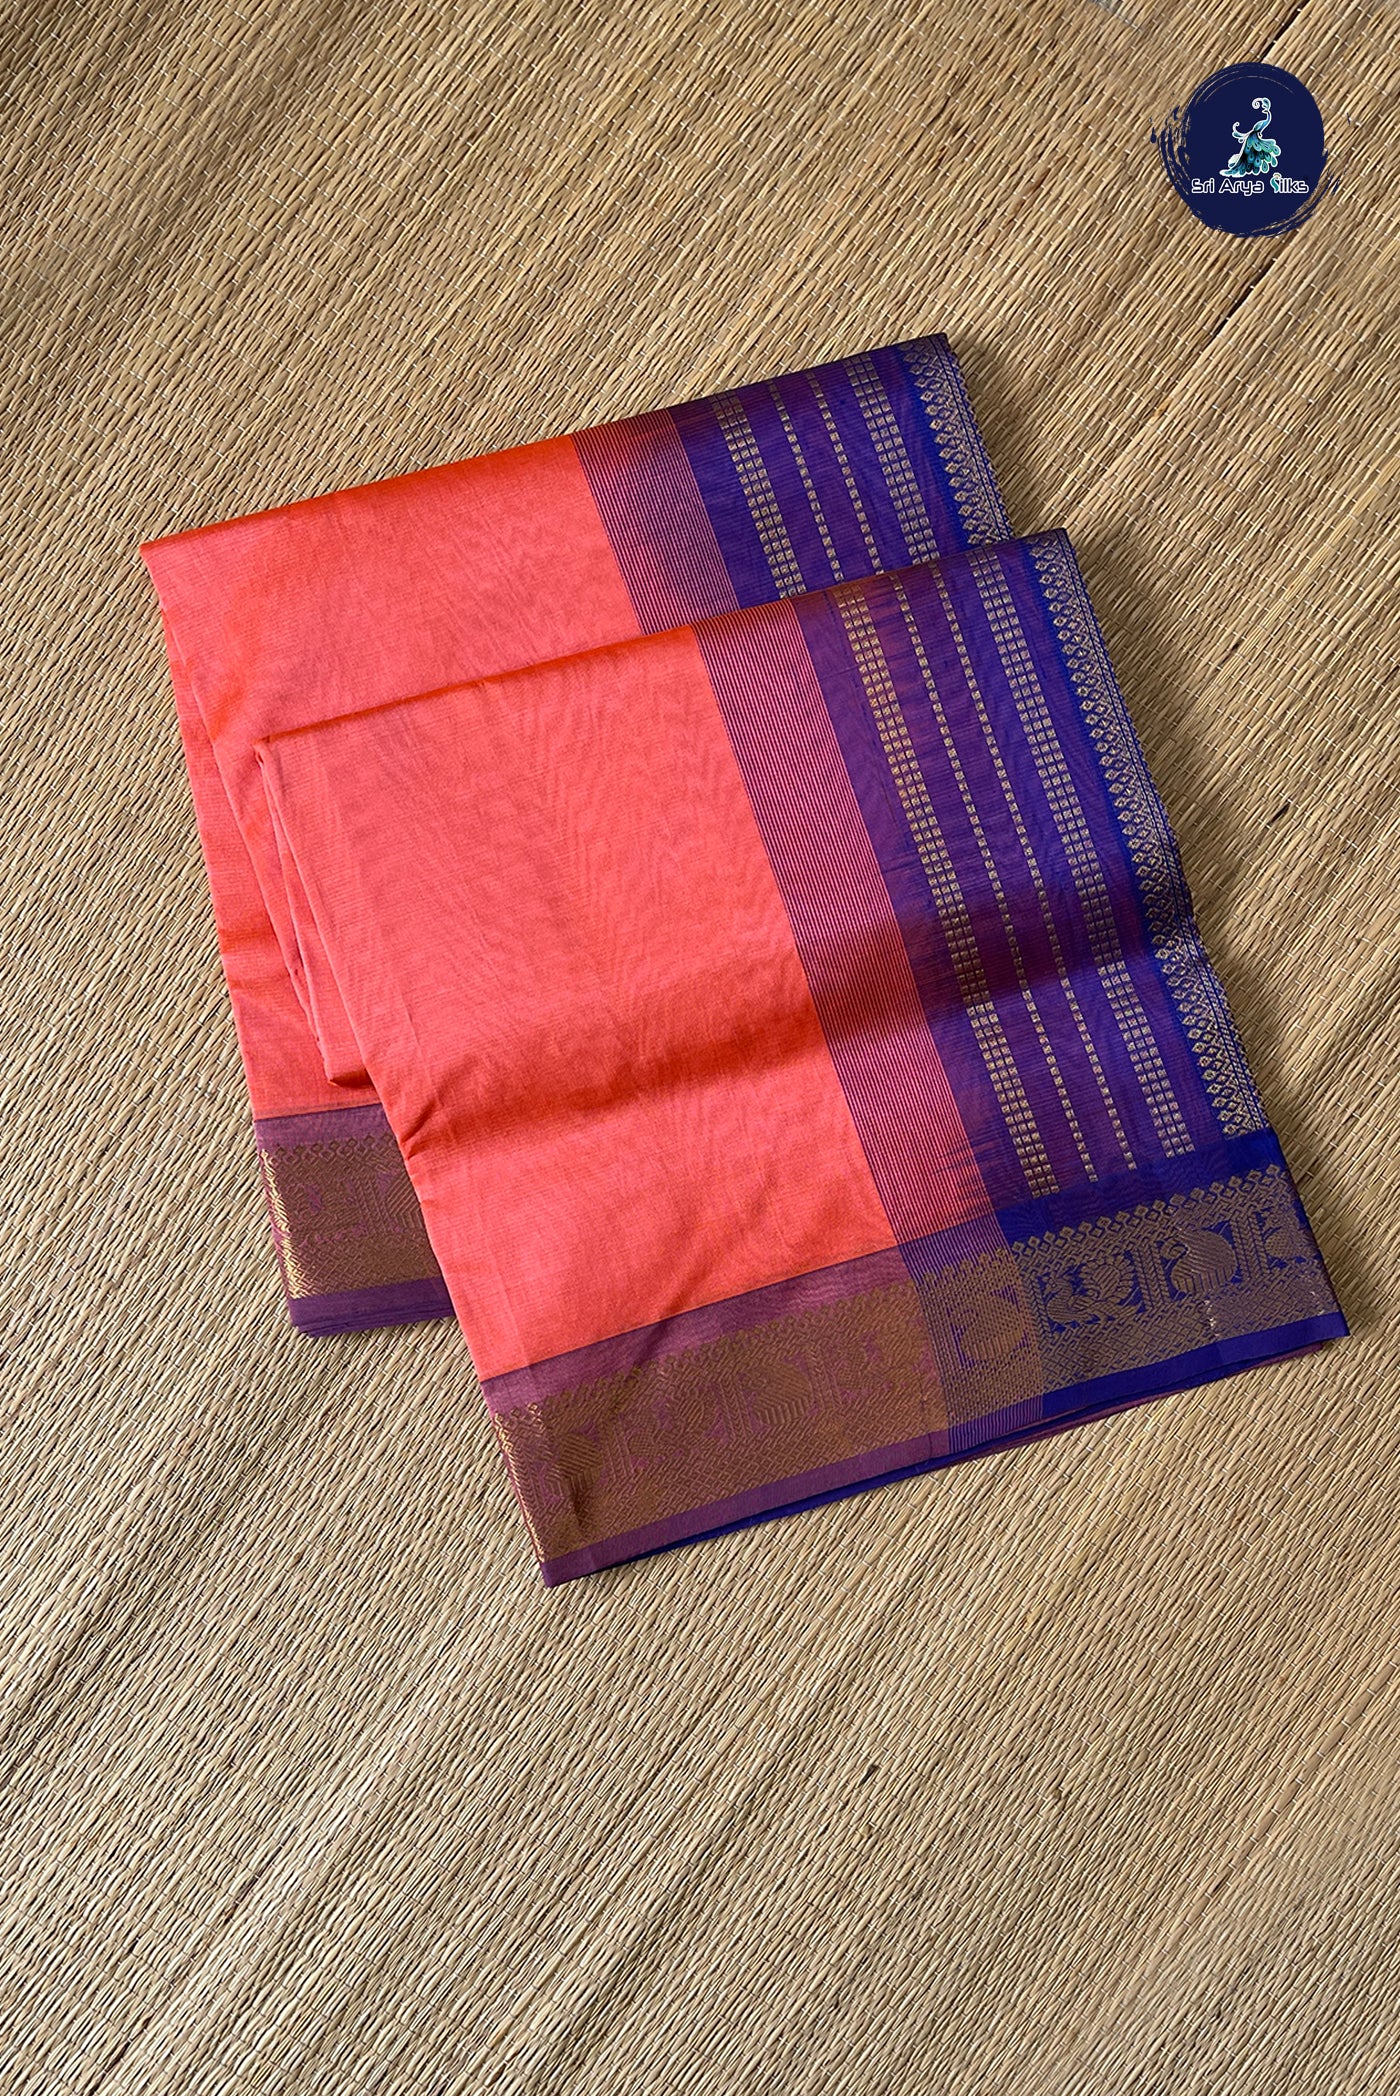 Light Orange Vaira Oosi Silk Cotton Saree With Vaira Oosi Pattern